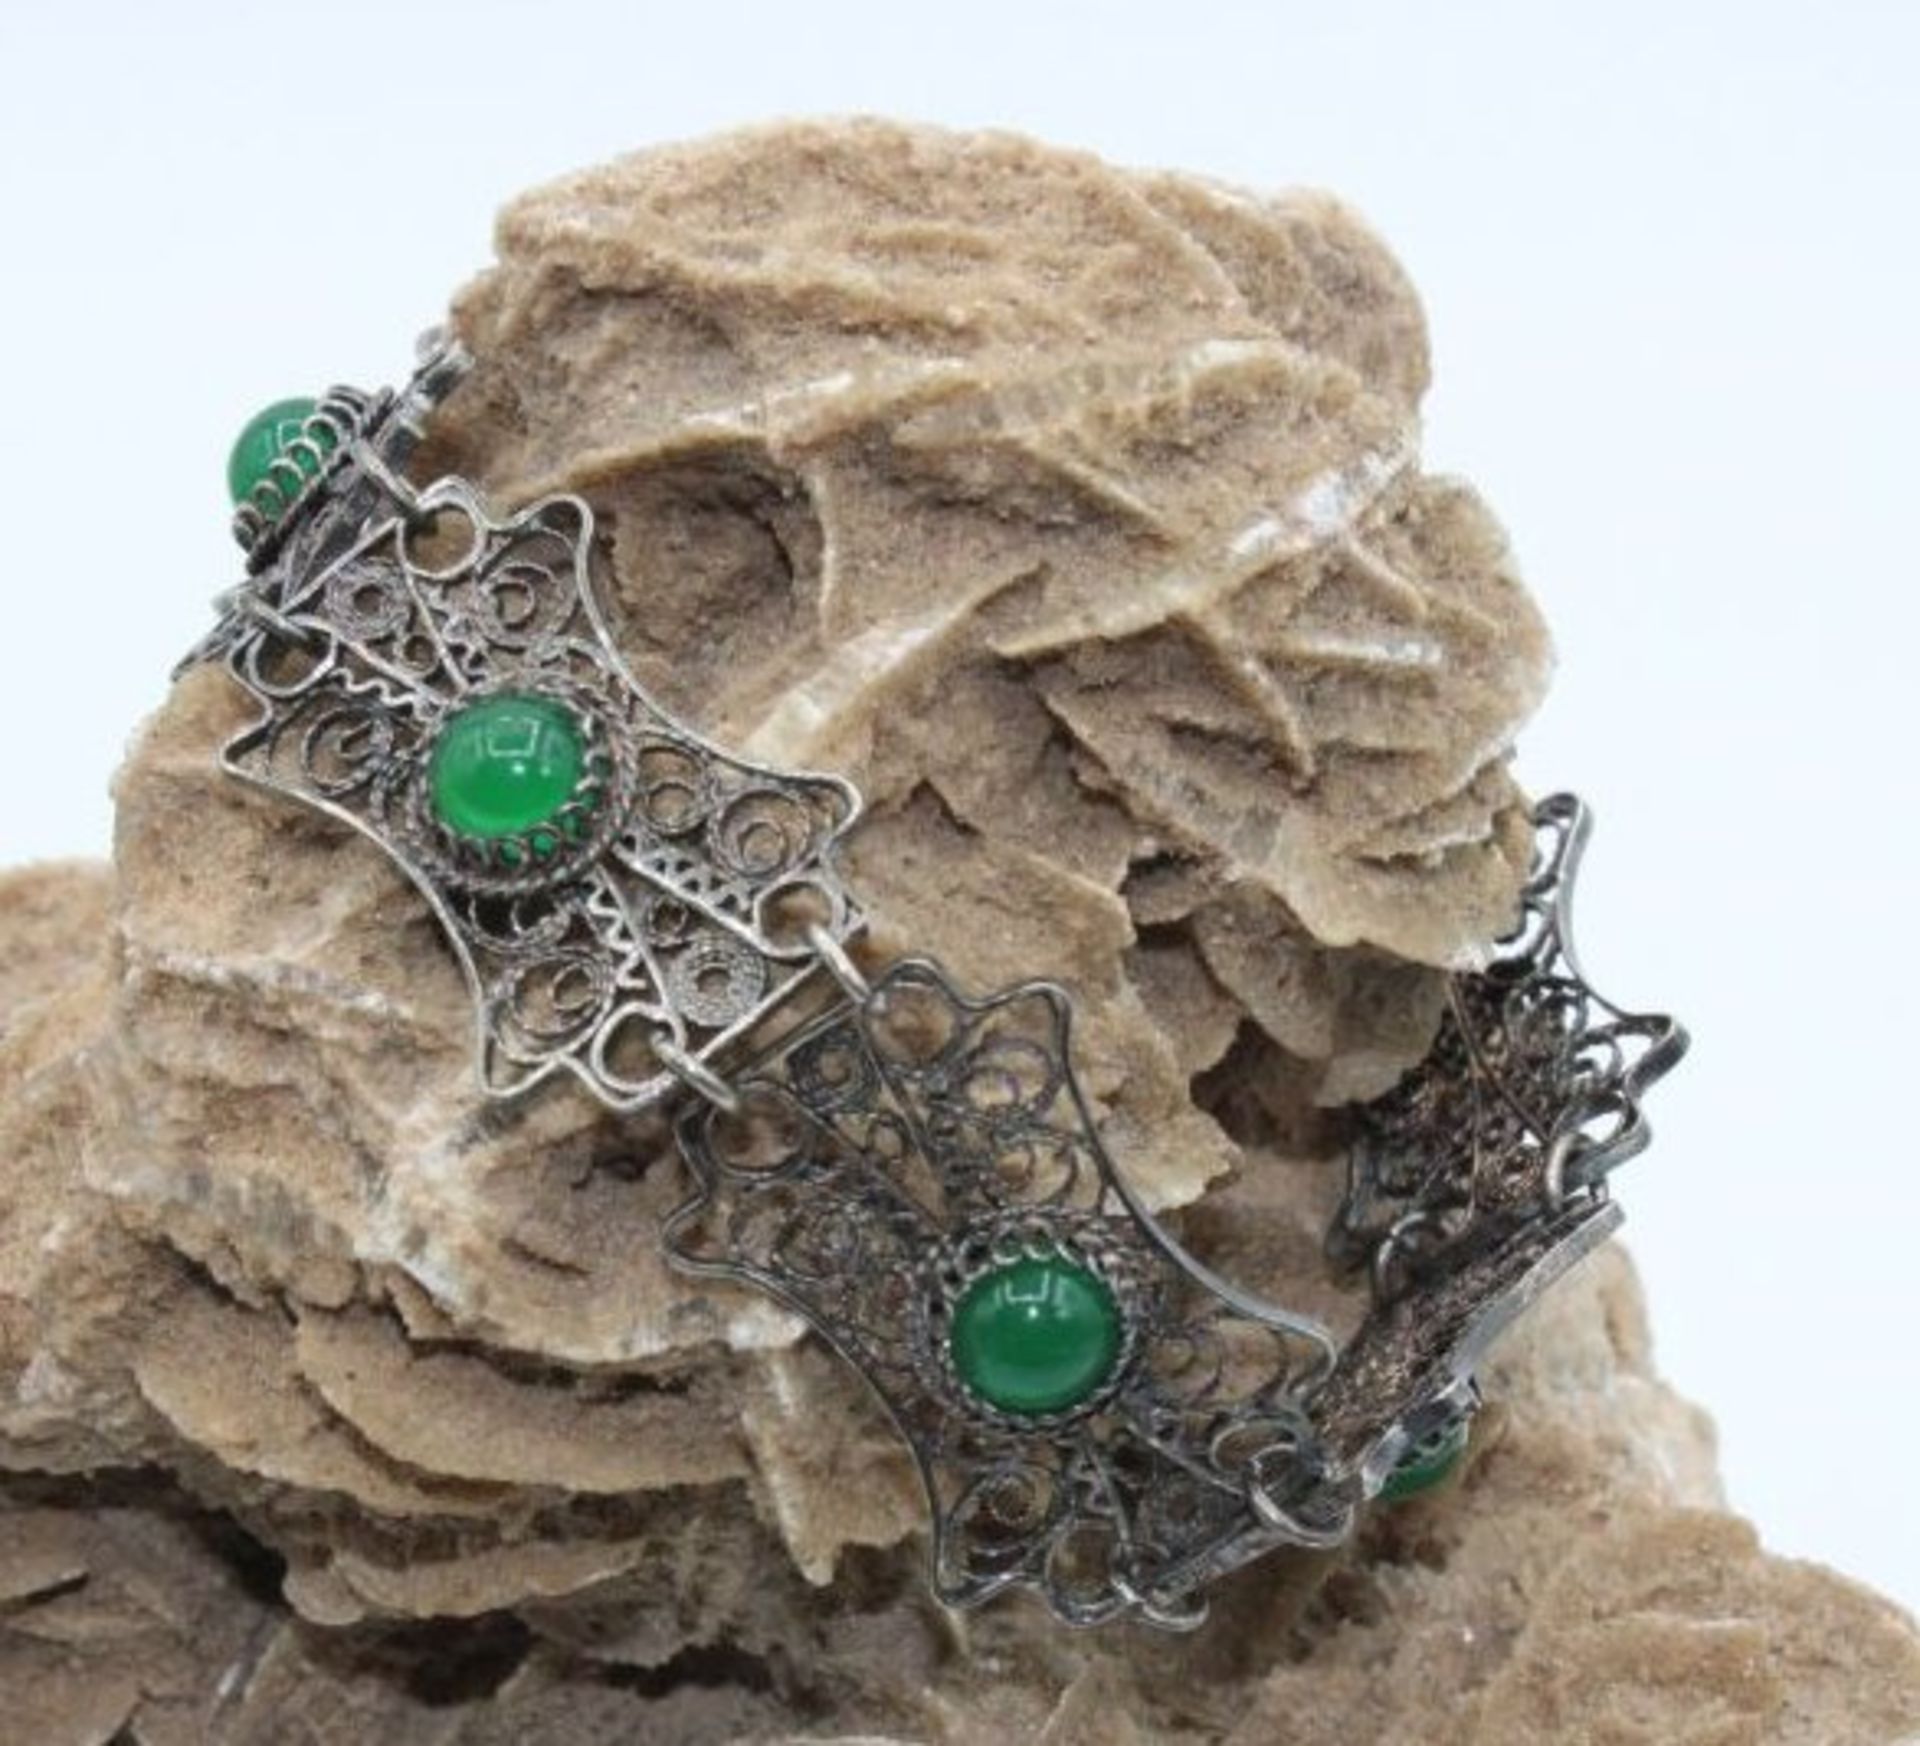 filigran gerarbeitetes Silber-Armband, besetzt mit grünen Steinen, 16,2gr., ca. L-18cm > 22cm.